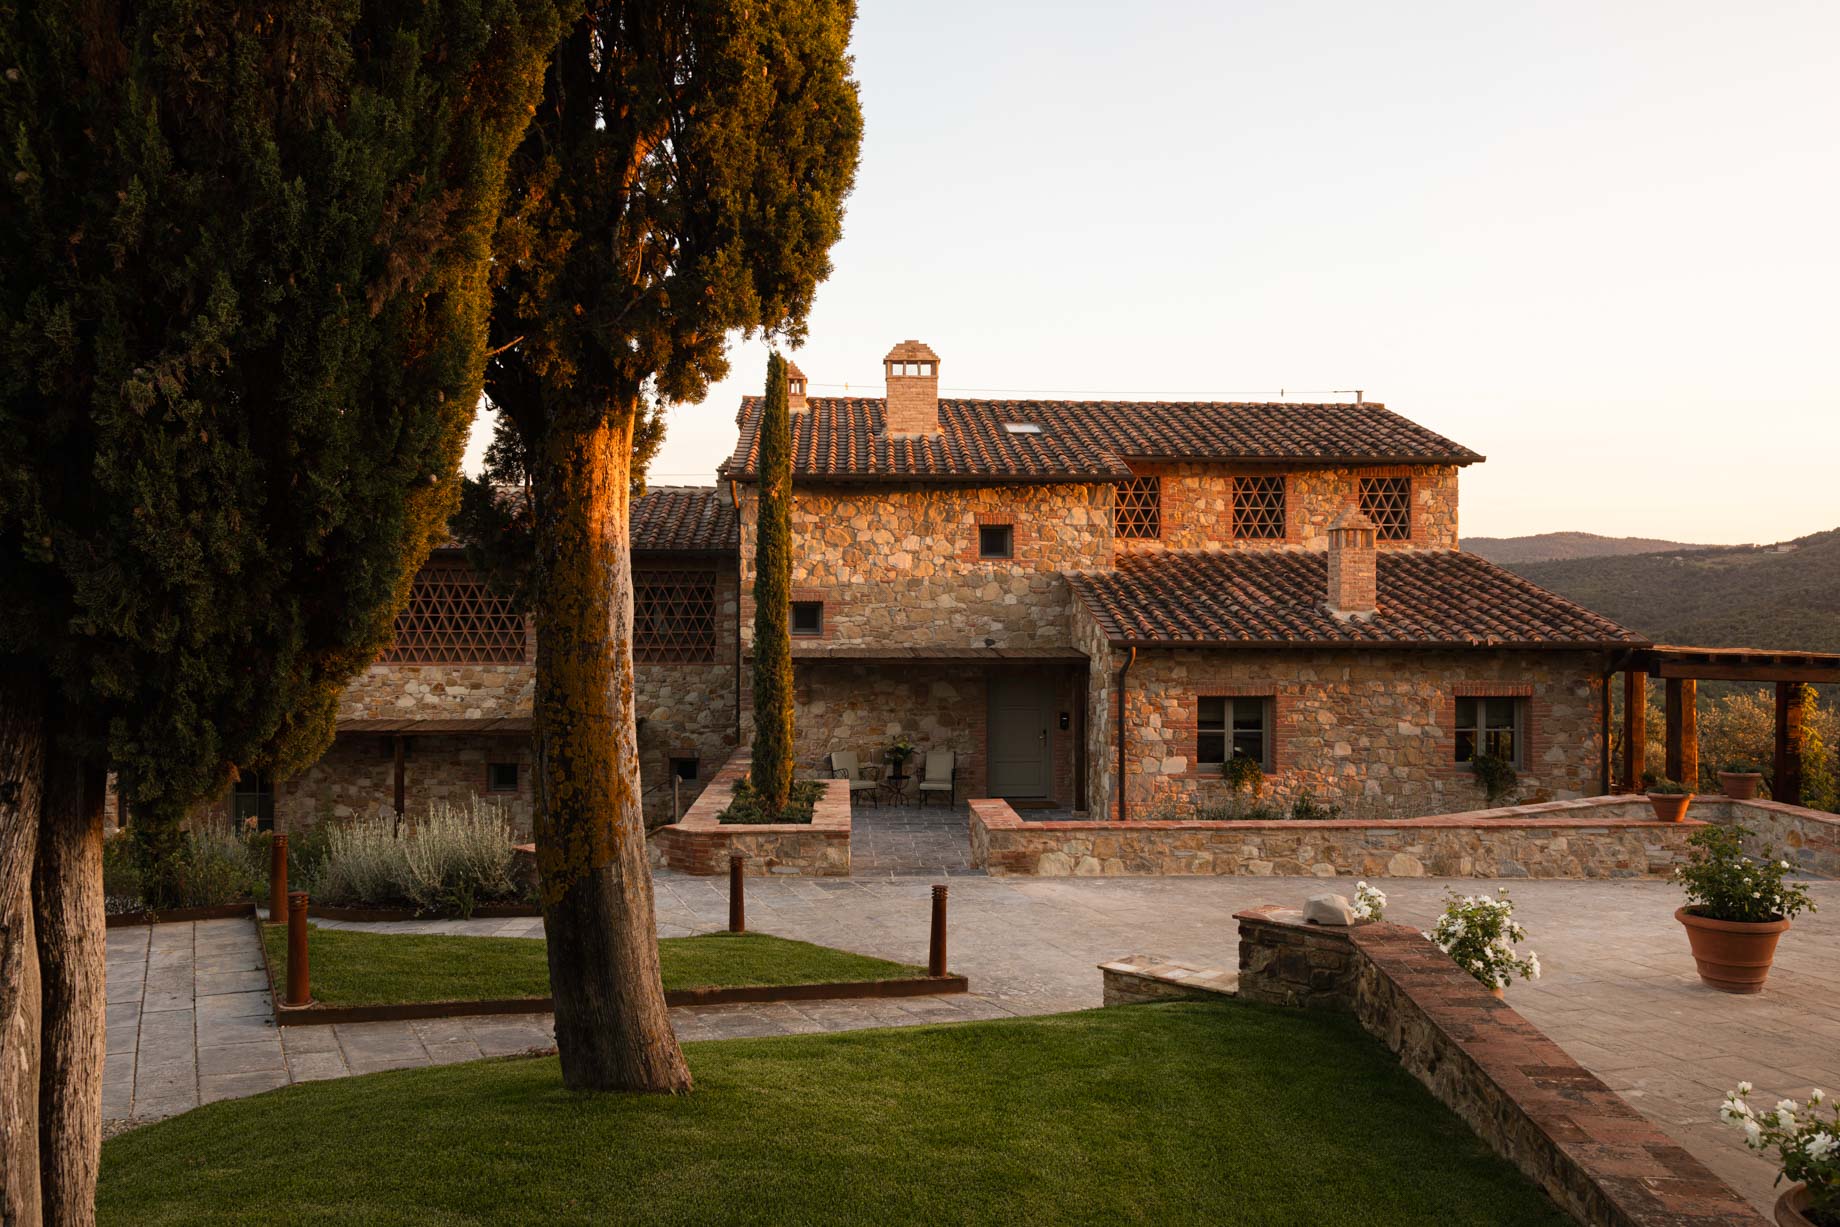 Castello di Casole, A Belmond Hotel, Tuscany – Casole d’Elsa, Italy – Villa Thesan